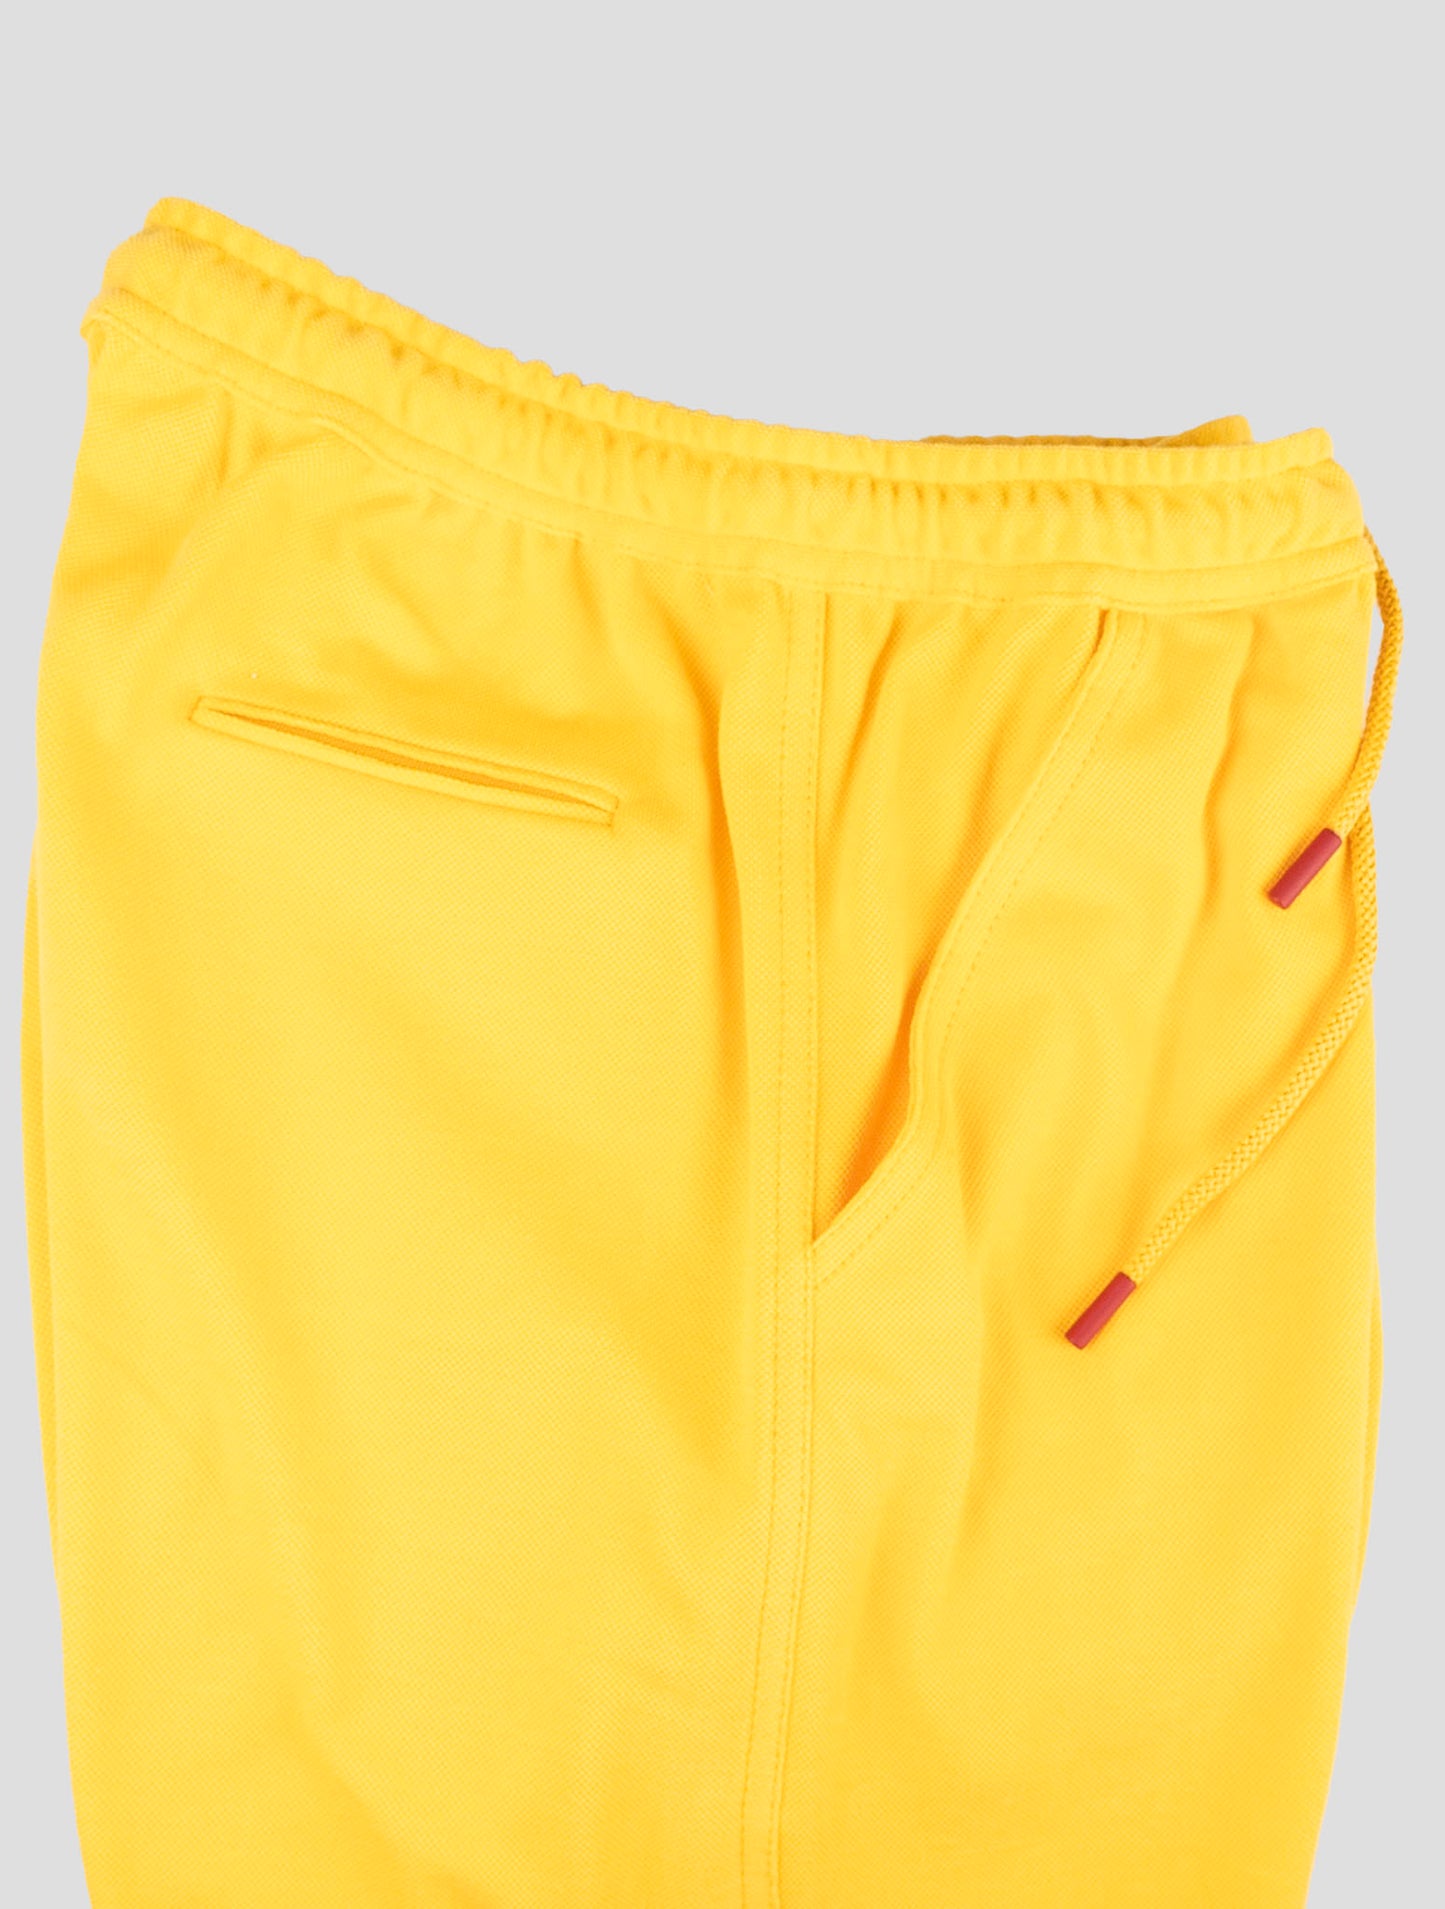 Kiton Odgovarajuća odjeća - trenirka crvene Mariano i žute kratke hlače